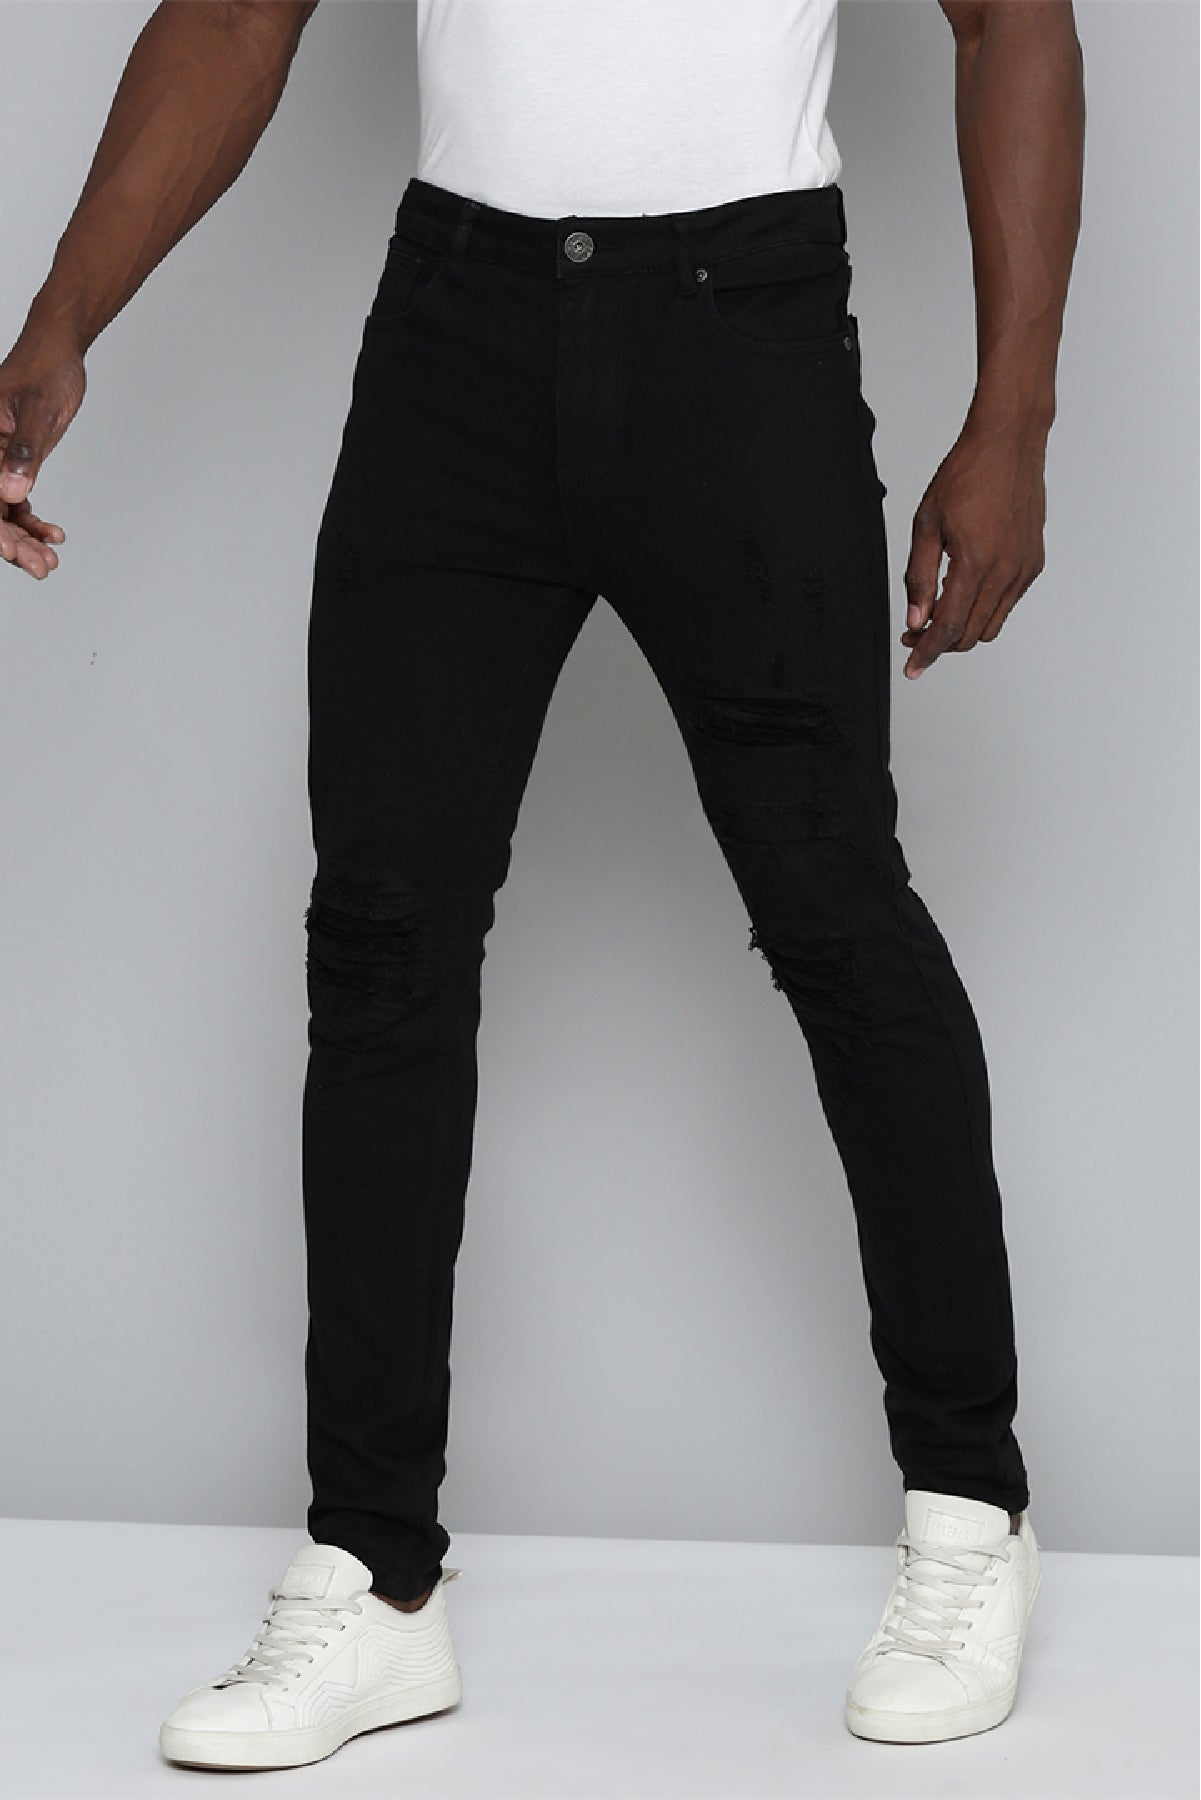 GIORDANO Slim Men Black Jeans - Buy GIORDANO Slim Men Black Jeans Online at  Best Prices in India | Flipkart.com